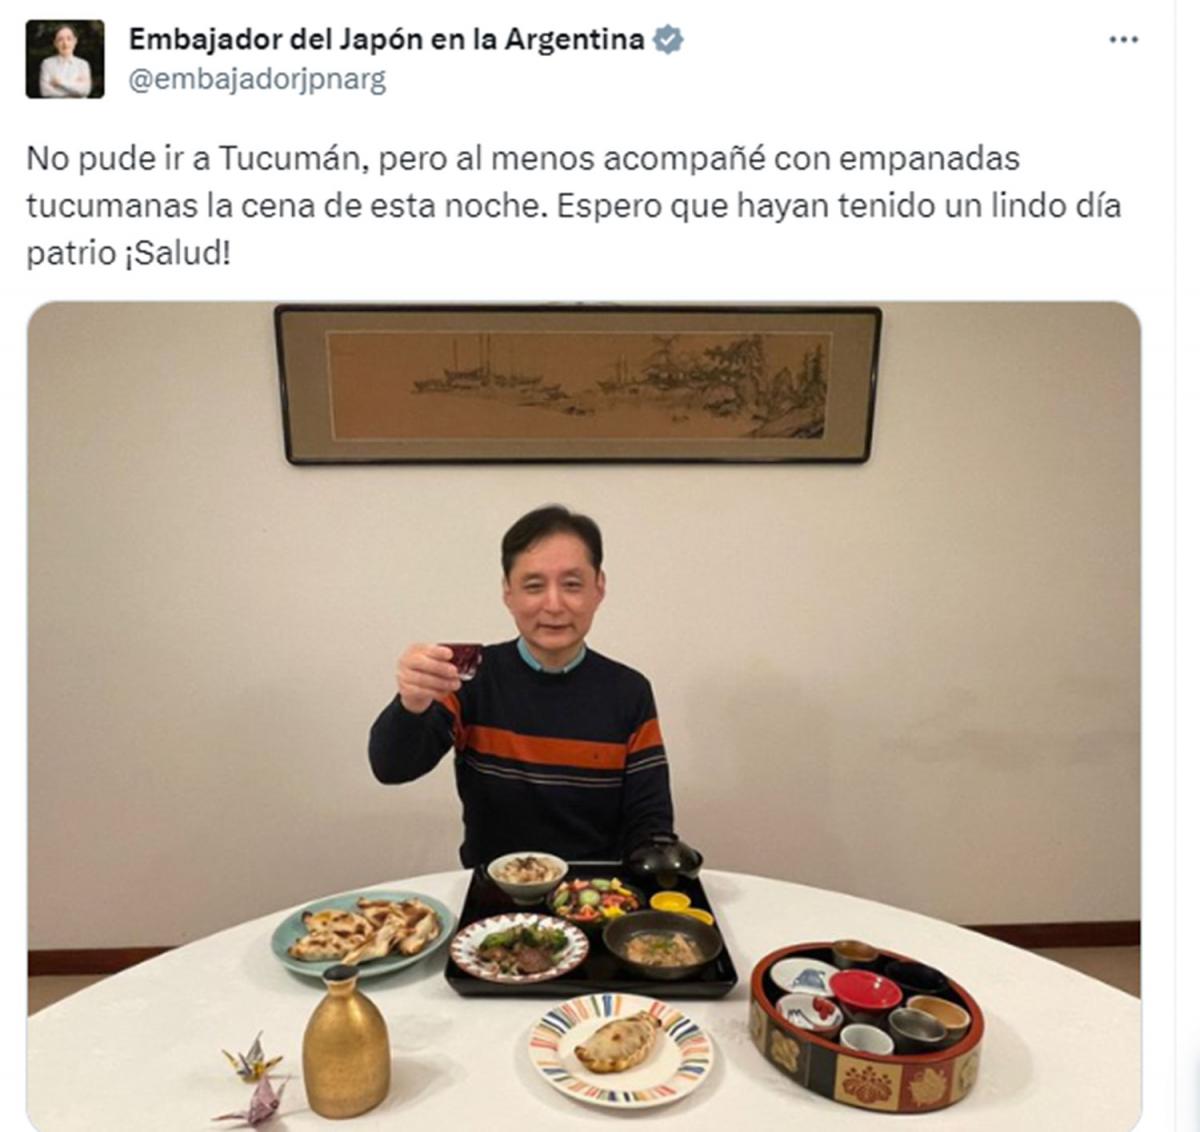 El embajador japonés en Argentina festejó el 9 de Julio comiendo empanadas tucumanas